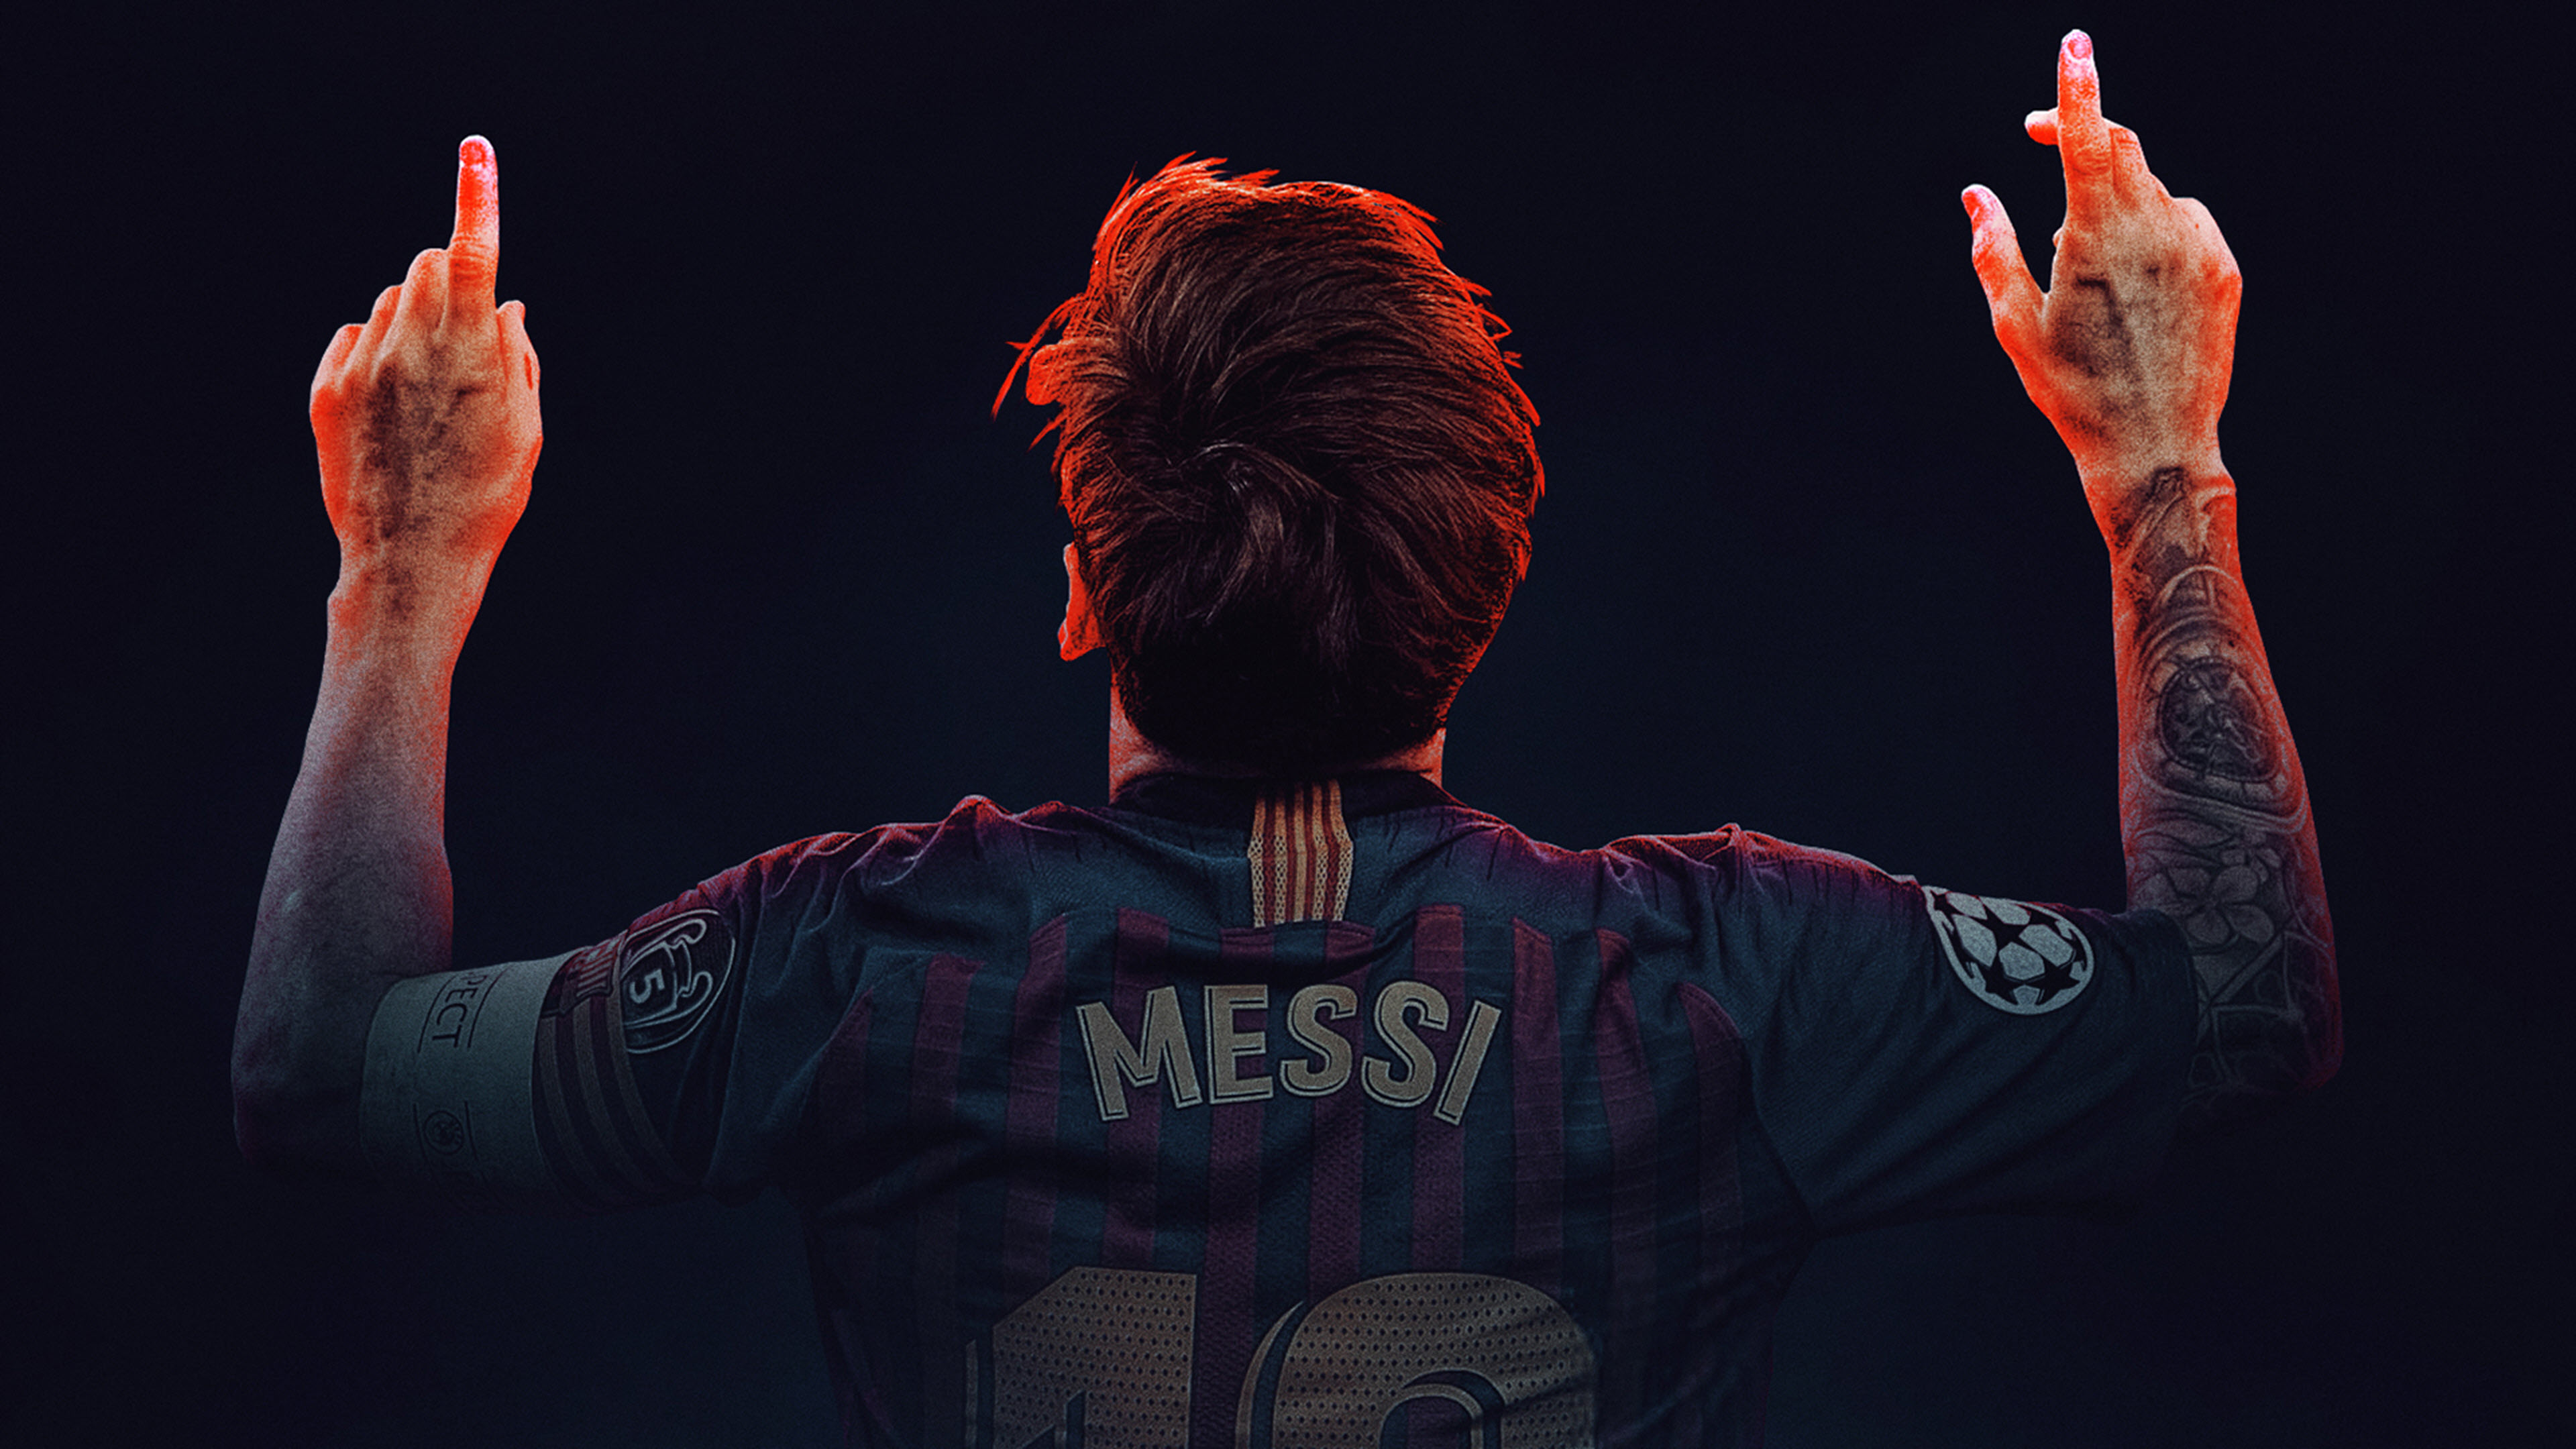 Hãy tận hưởng ngày của bạn với bộ sưu tập ảnh Messi 4K đẹp mê hồn. Sắp xếp inđăng cuộc họp, cuộc điện thoại hoặc giải lao với tấm hình này và cảm nhận mọi cảm xúc trần trọng nhất của bạn với bida.